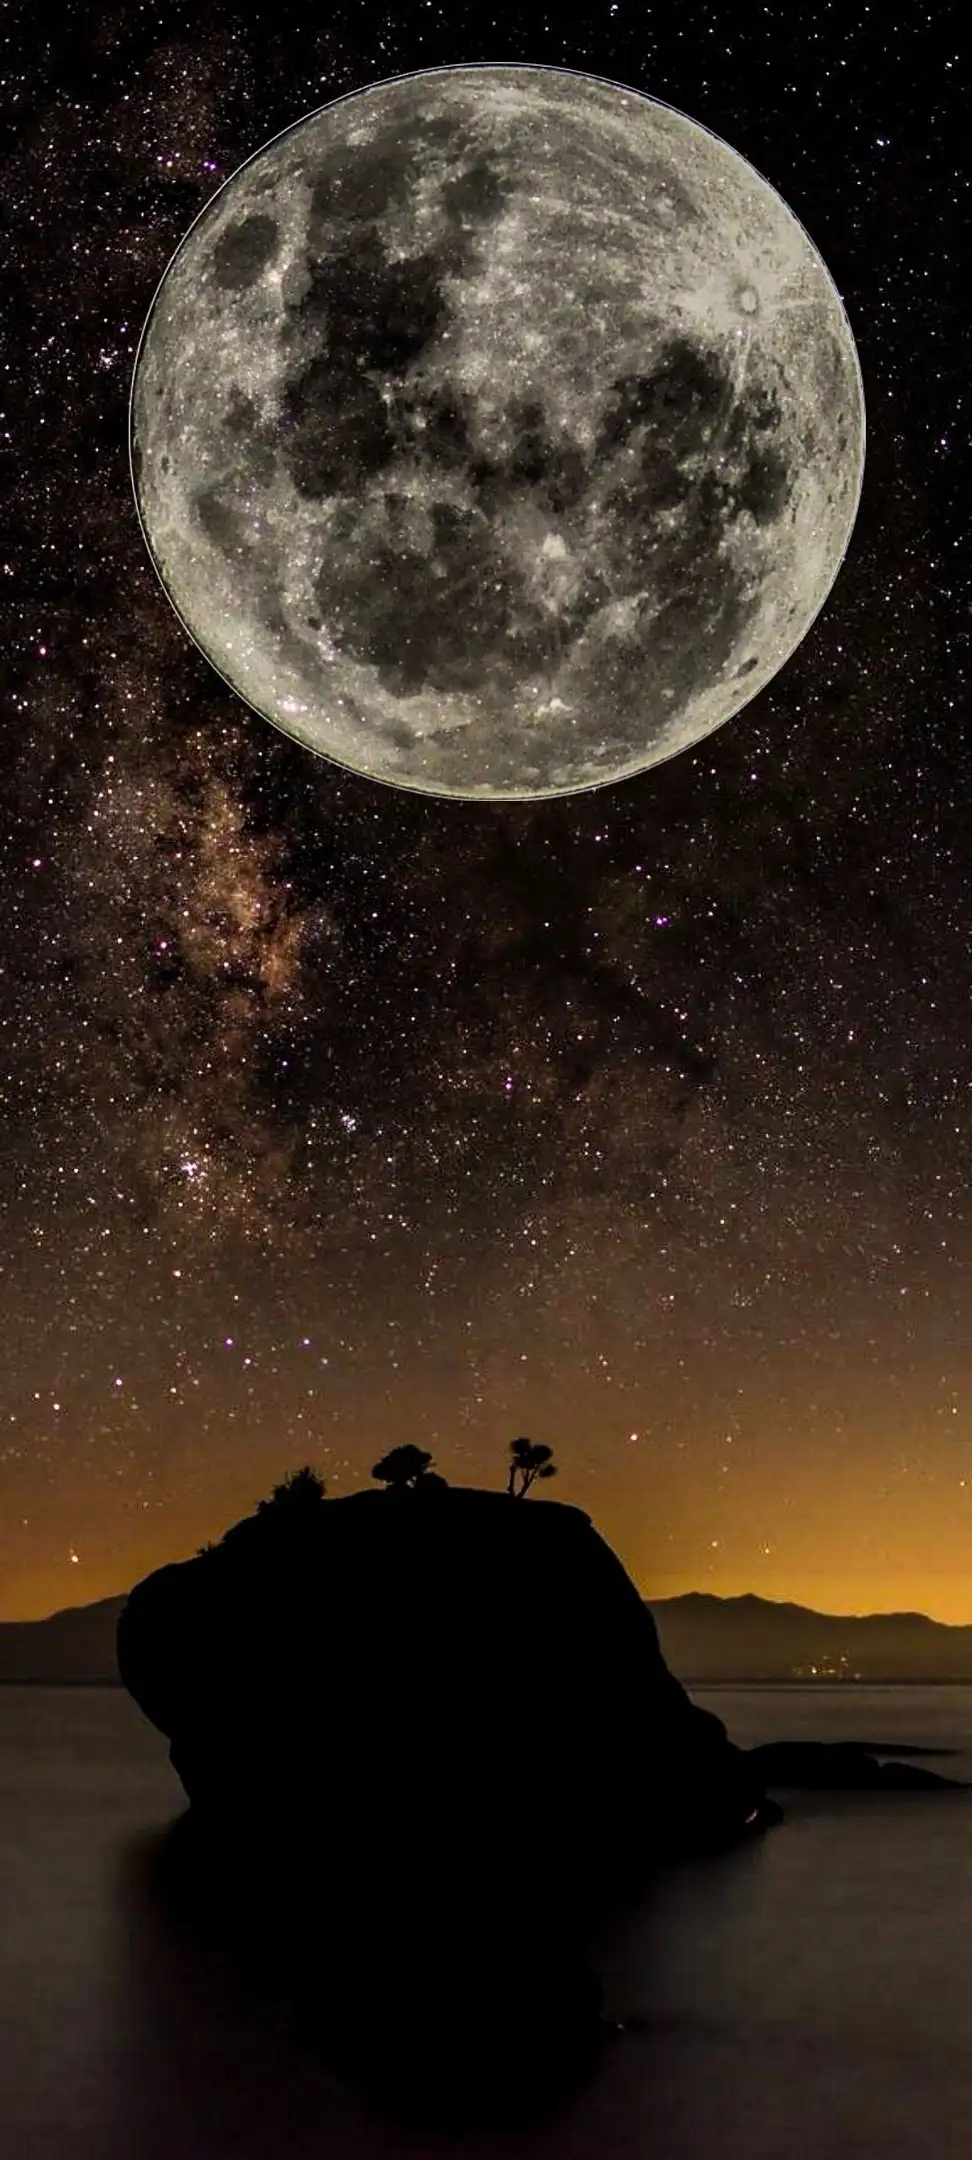 صور جميلة عن القمر